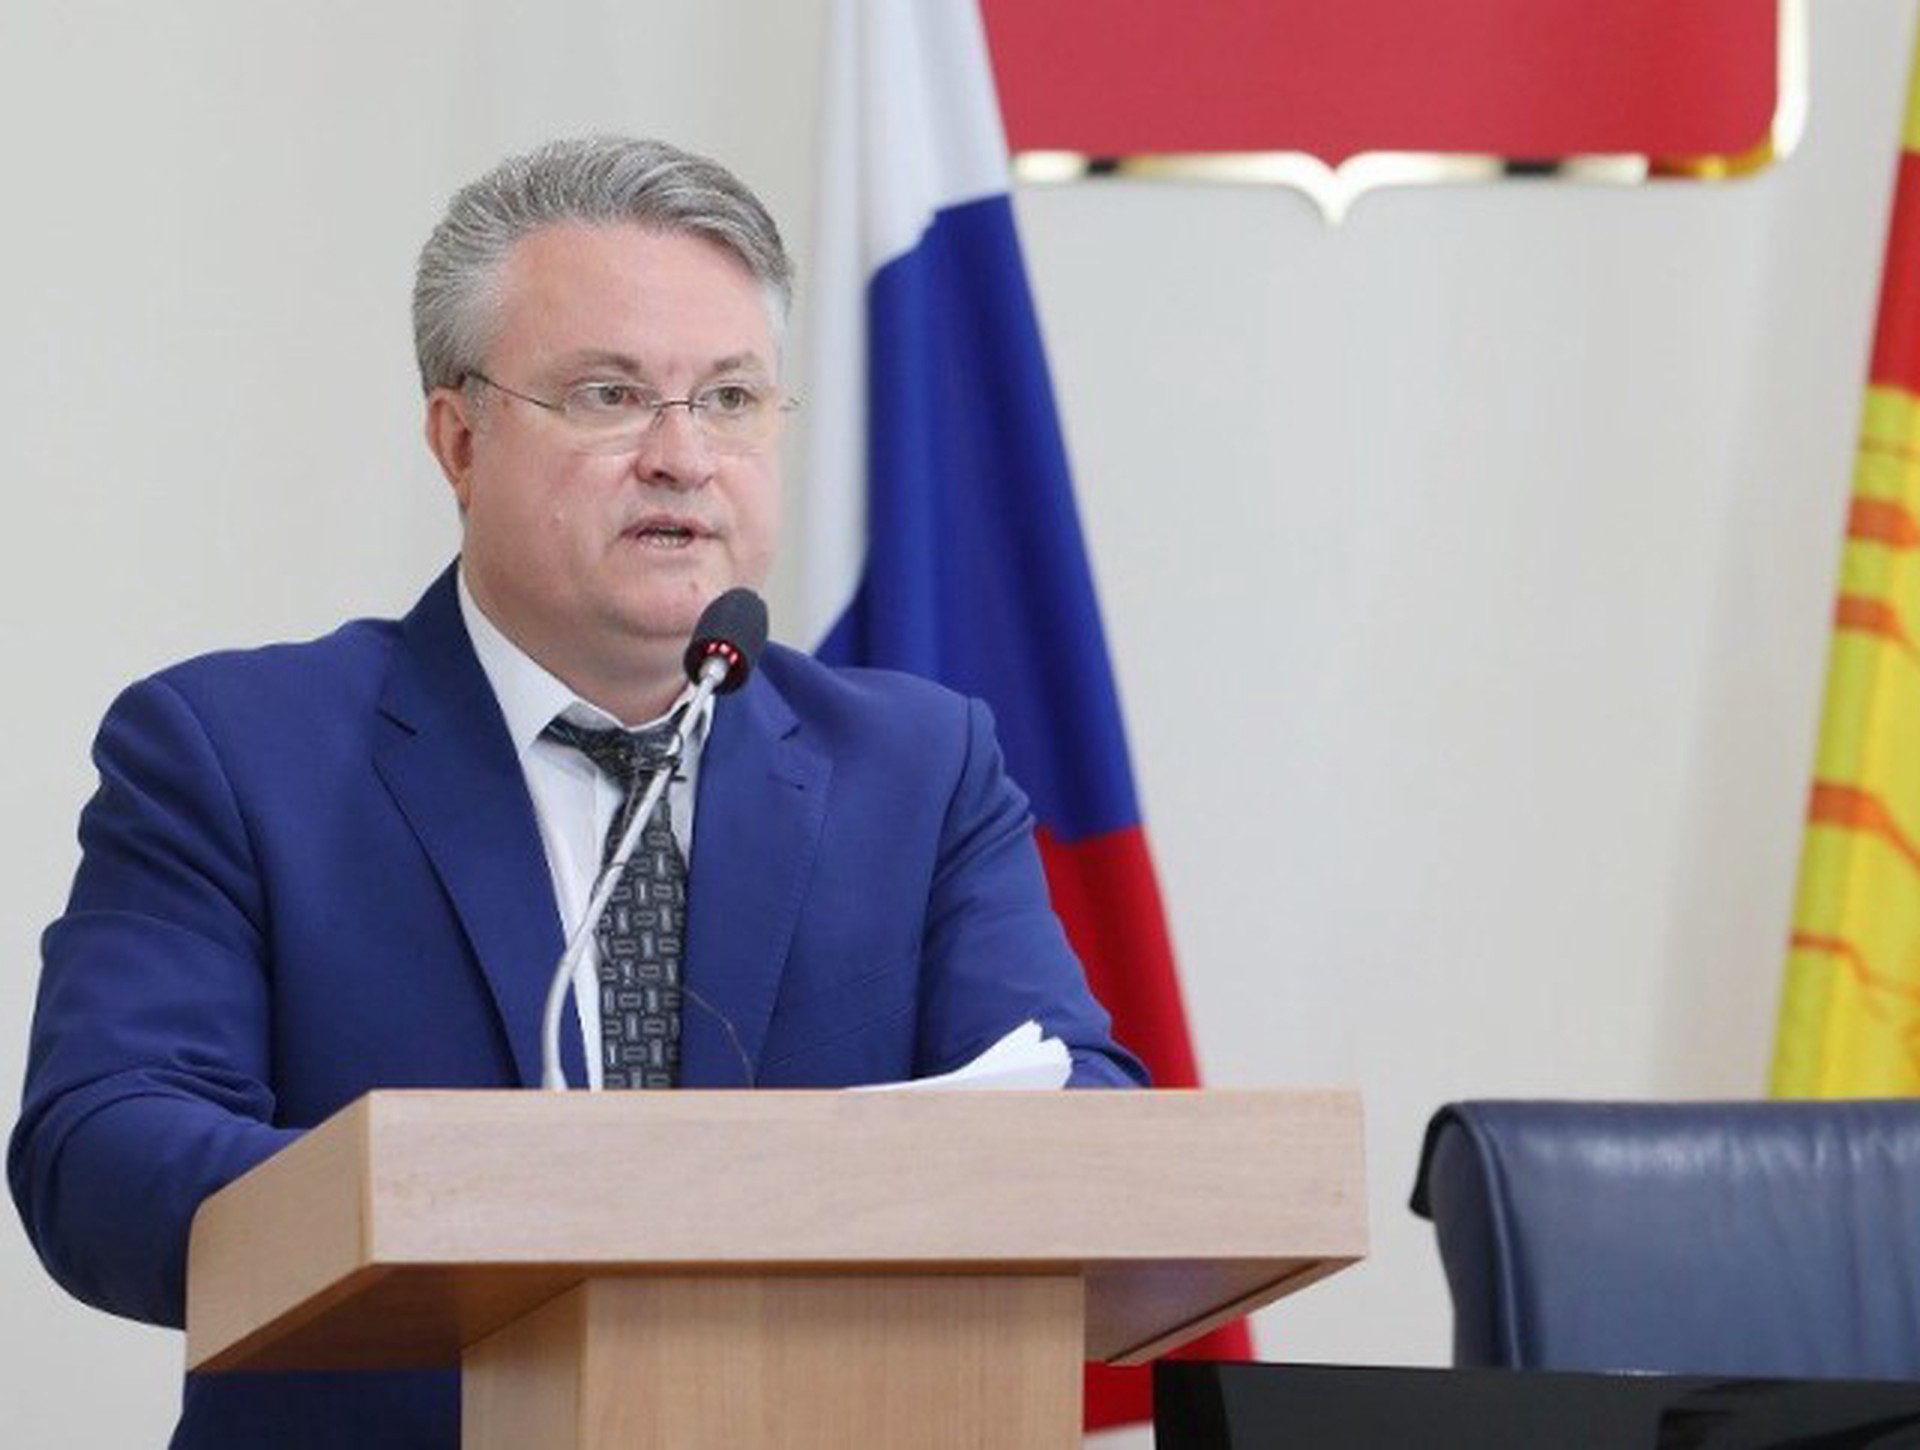 Мэр Воронежа Кстенин заявил об отставке в связи с переходом на новую работу